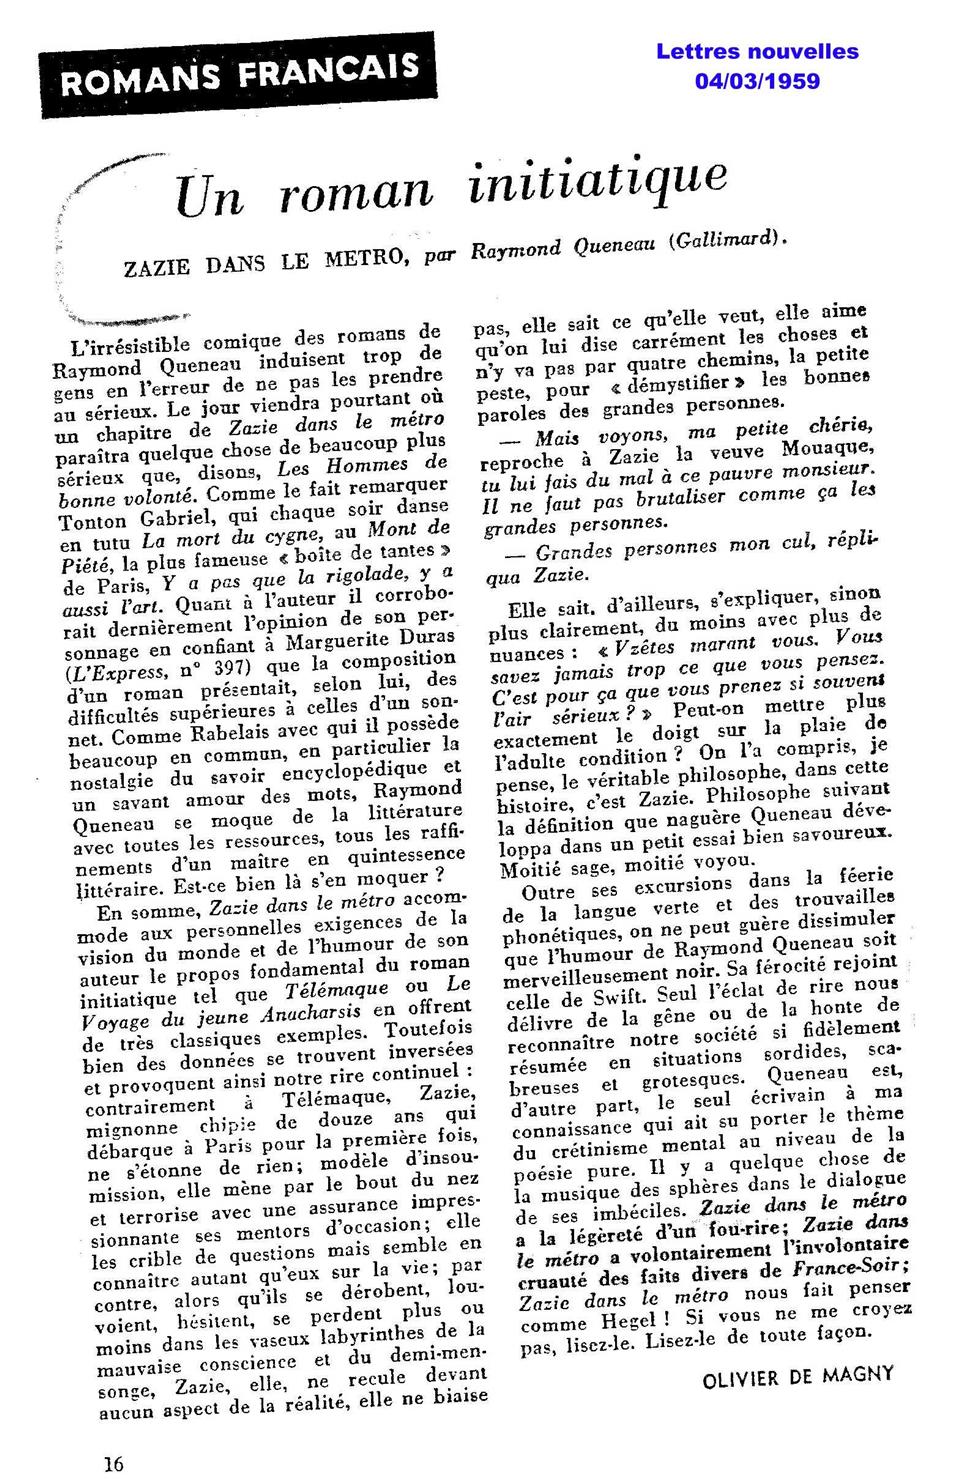 Lettres nouvelles - 04 mars 1959